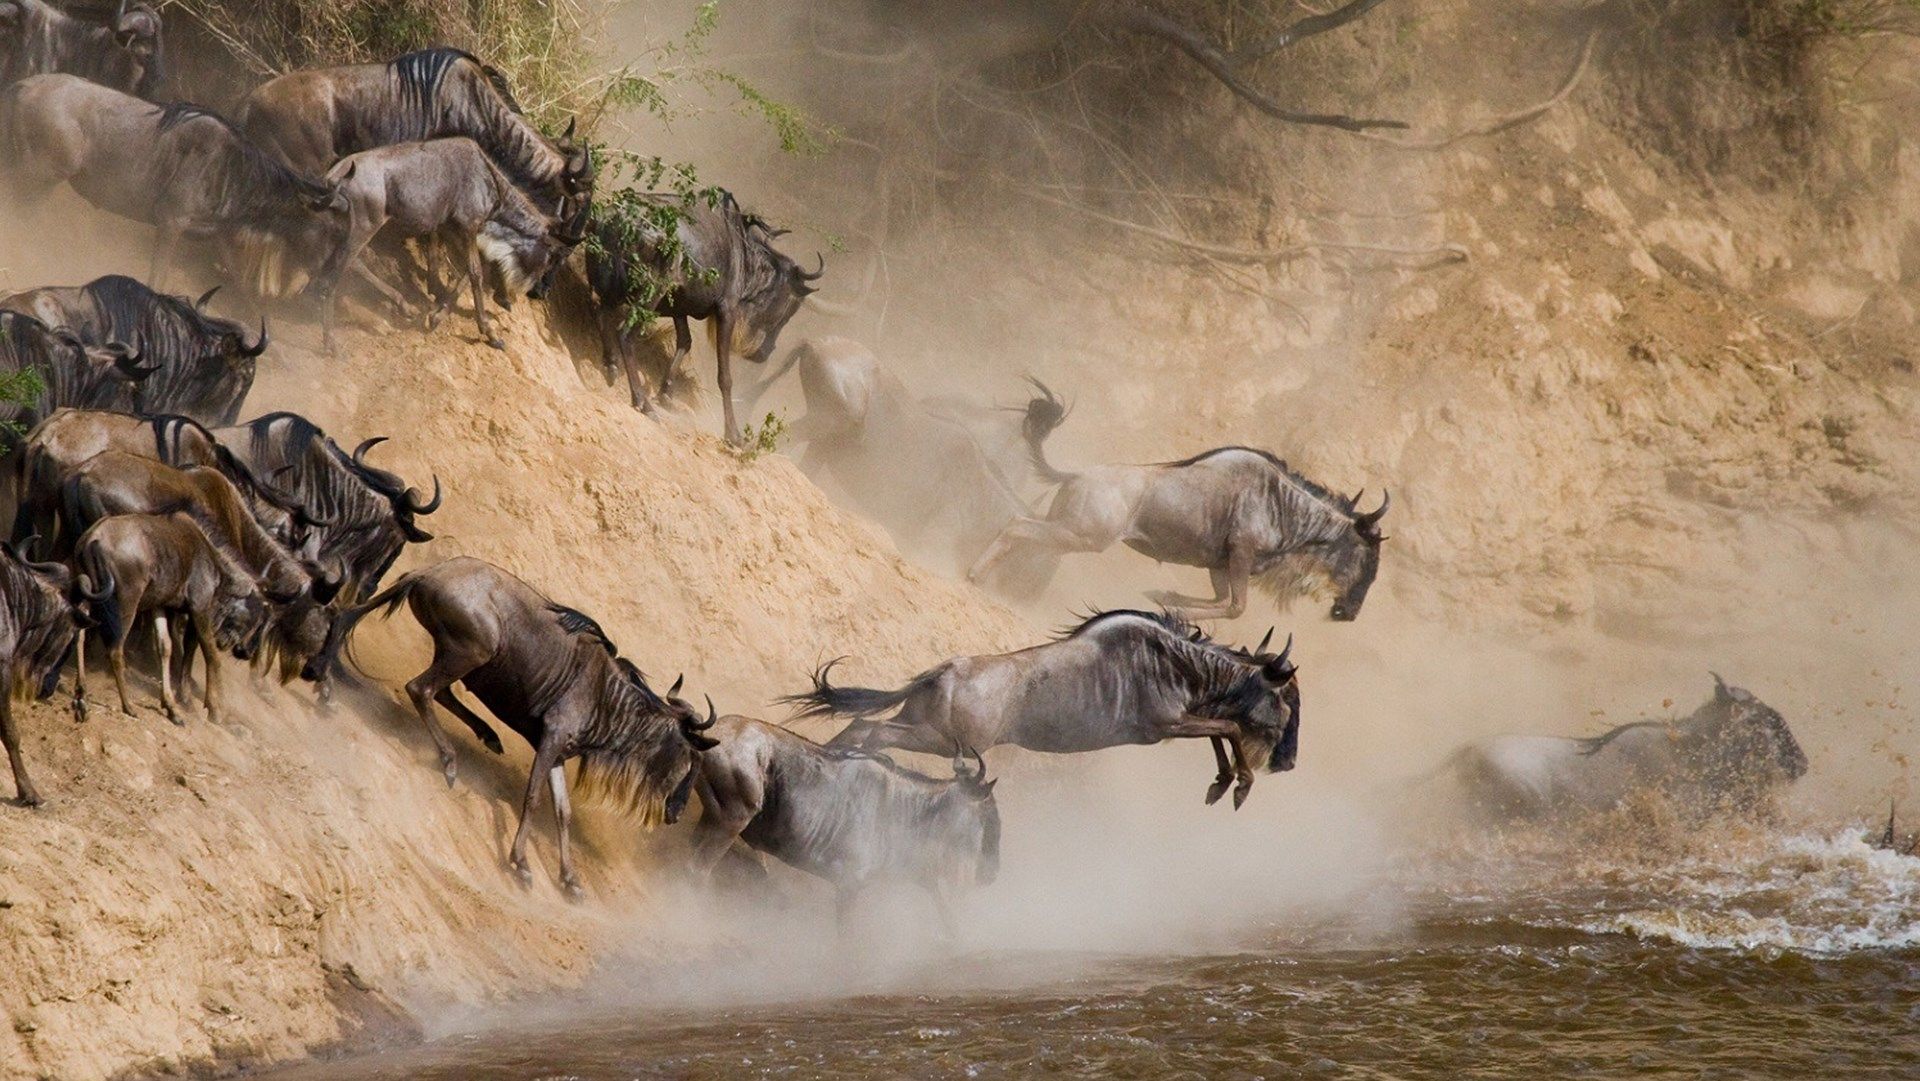 7 Days Serengeti Wildebeest Migration